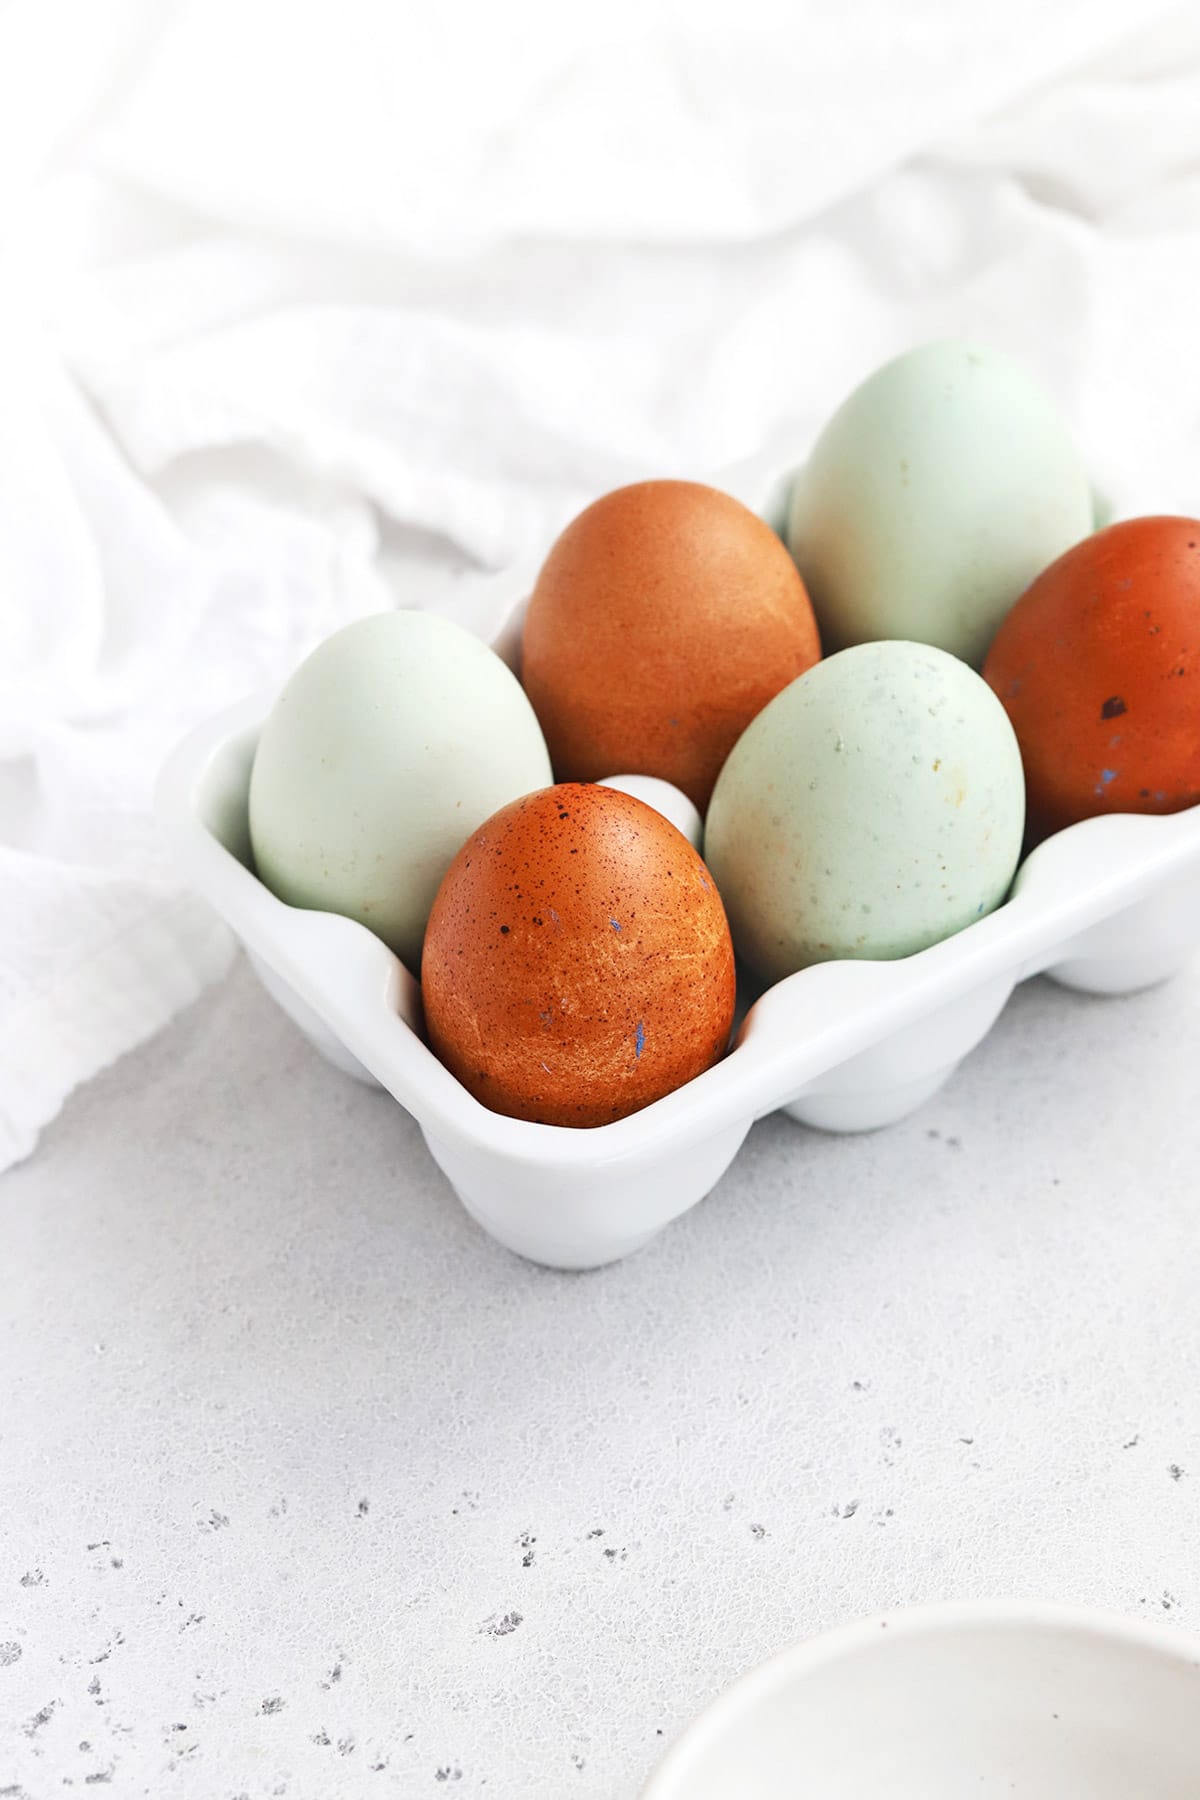 front view of muticolor farm eggs in a white egg carton